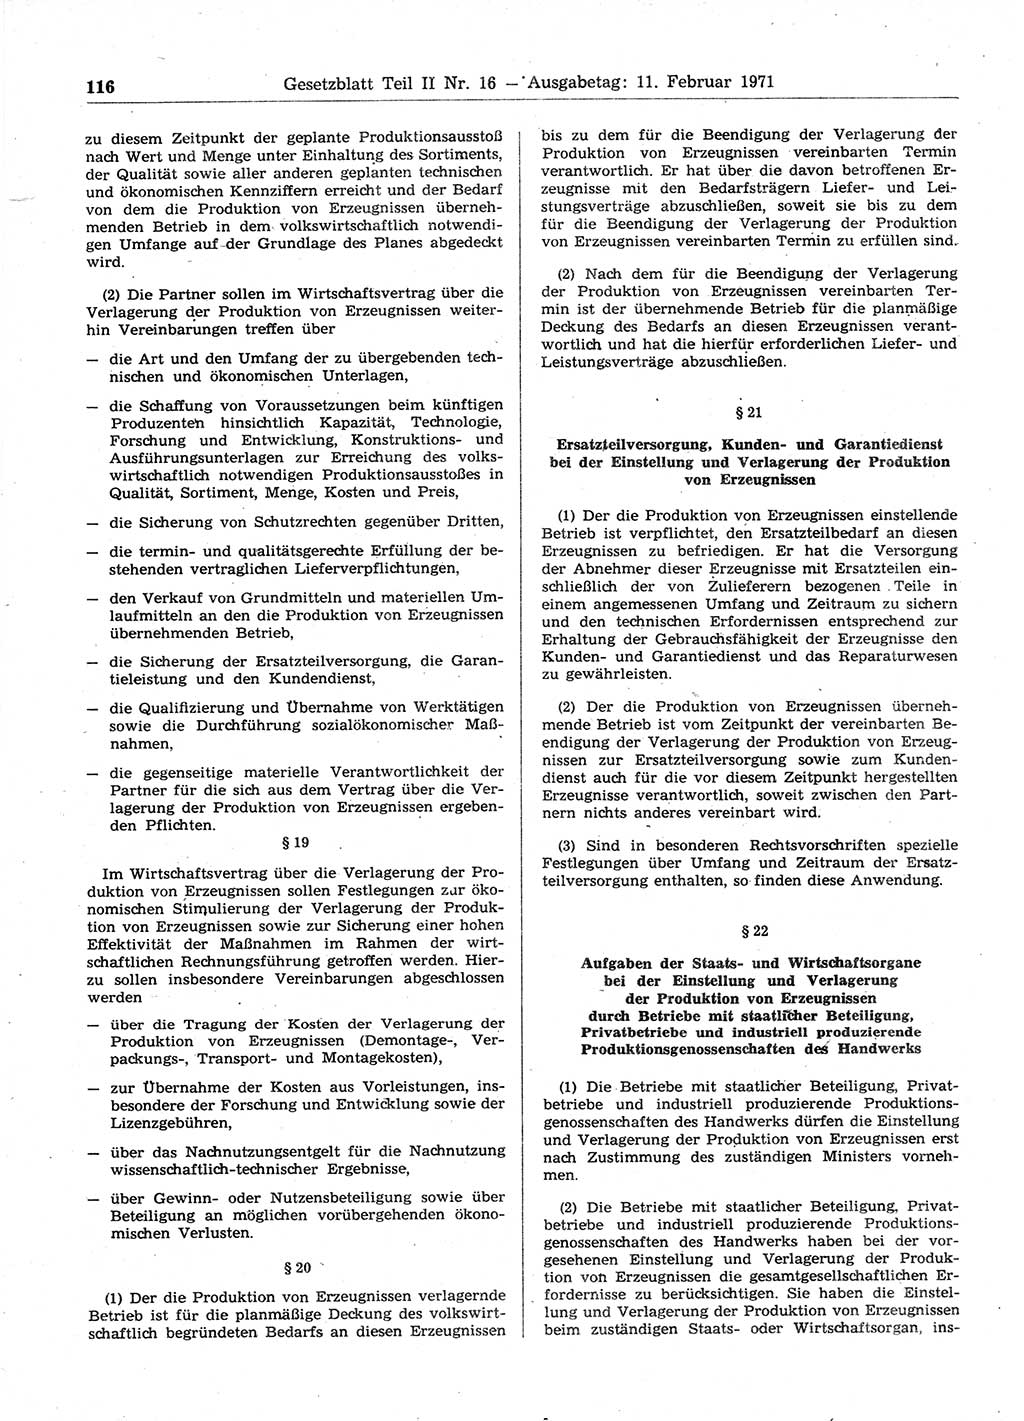 Gesetzblatt (GBl.) der Deutschen Demokratischen Republik (DDR) Teil ⅠⅠ 1971, Seite 116 (GBl. DDR ⅠⅠ 1971, S. 116)